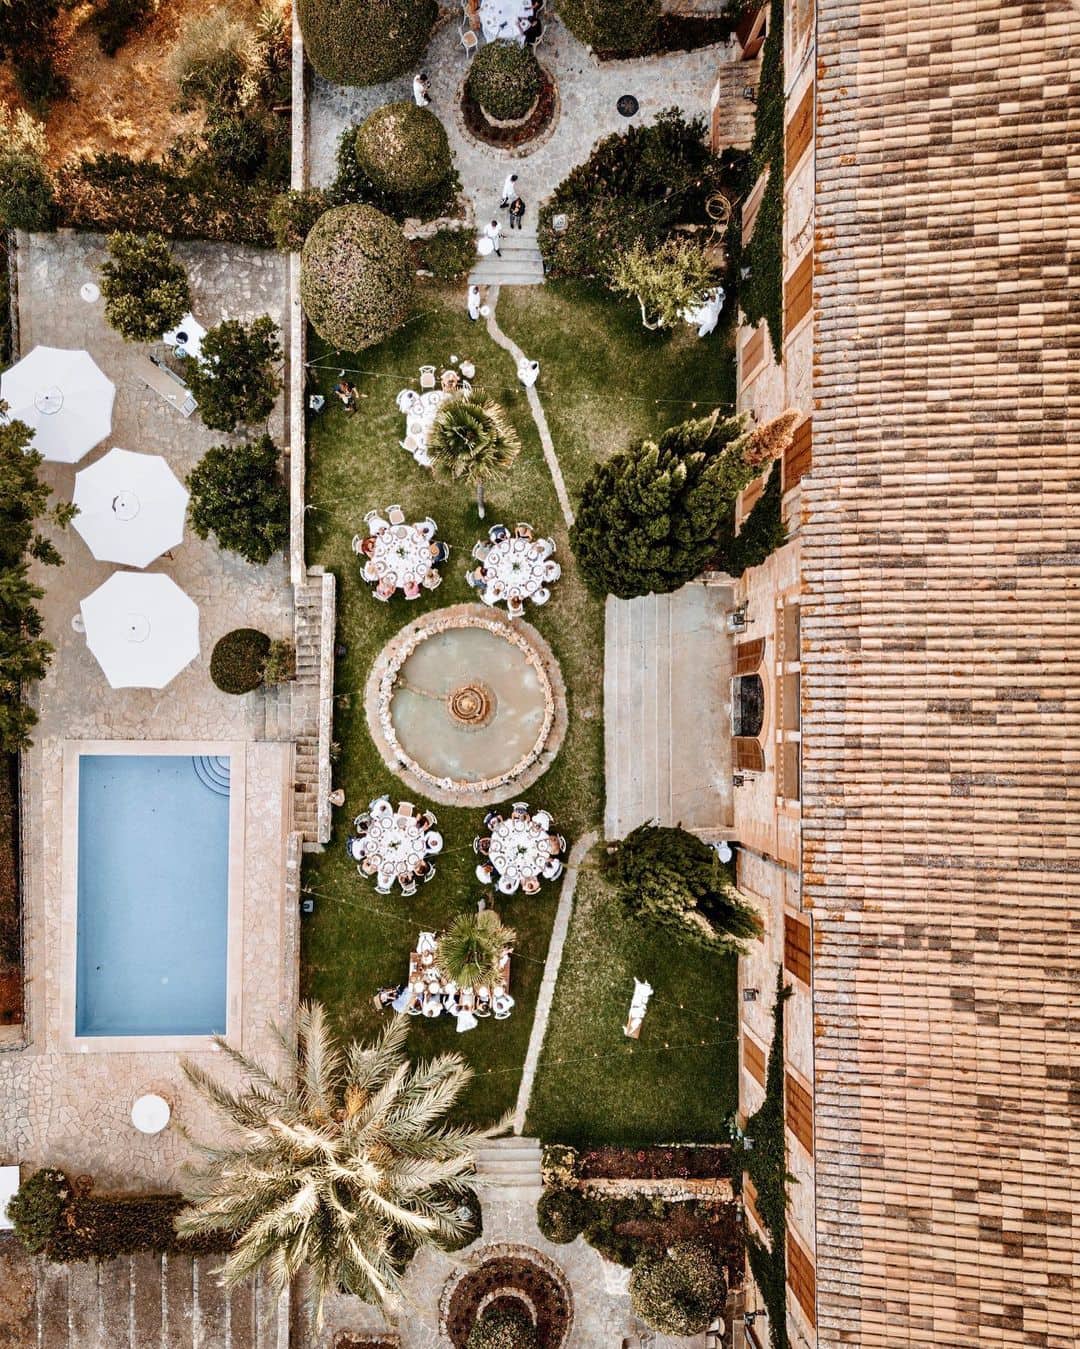 Vista aérea de Finca Son Togores en Mallorca, mostrando el encantador jardín y la reluciente piscina."